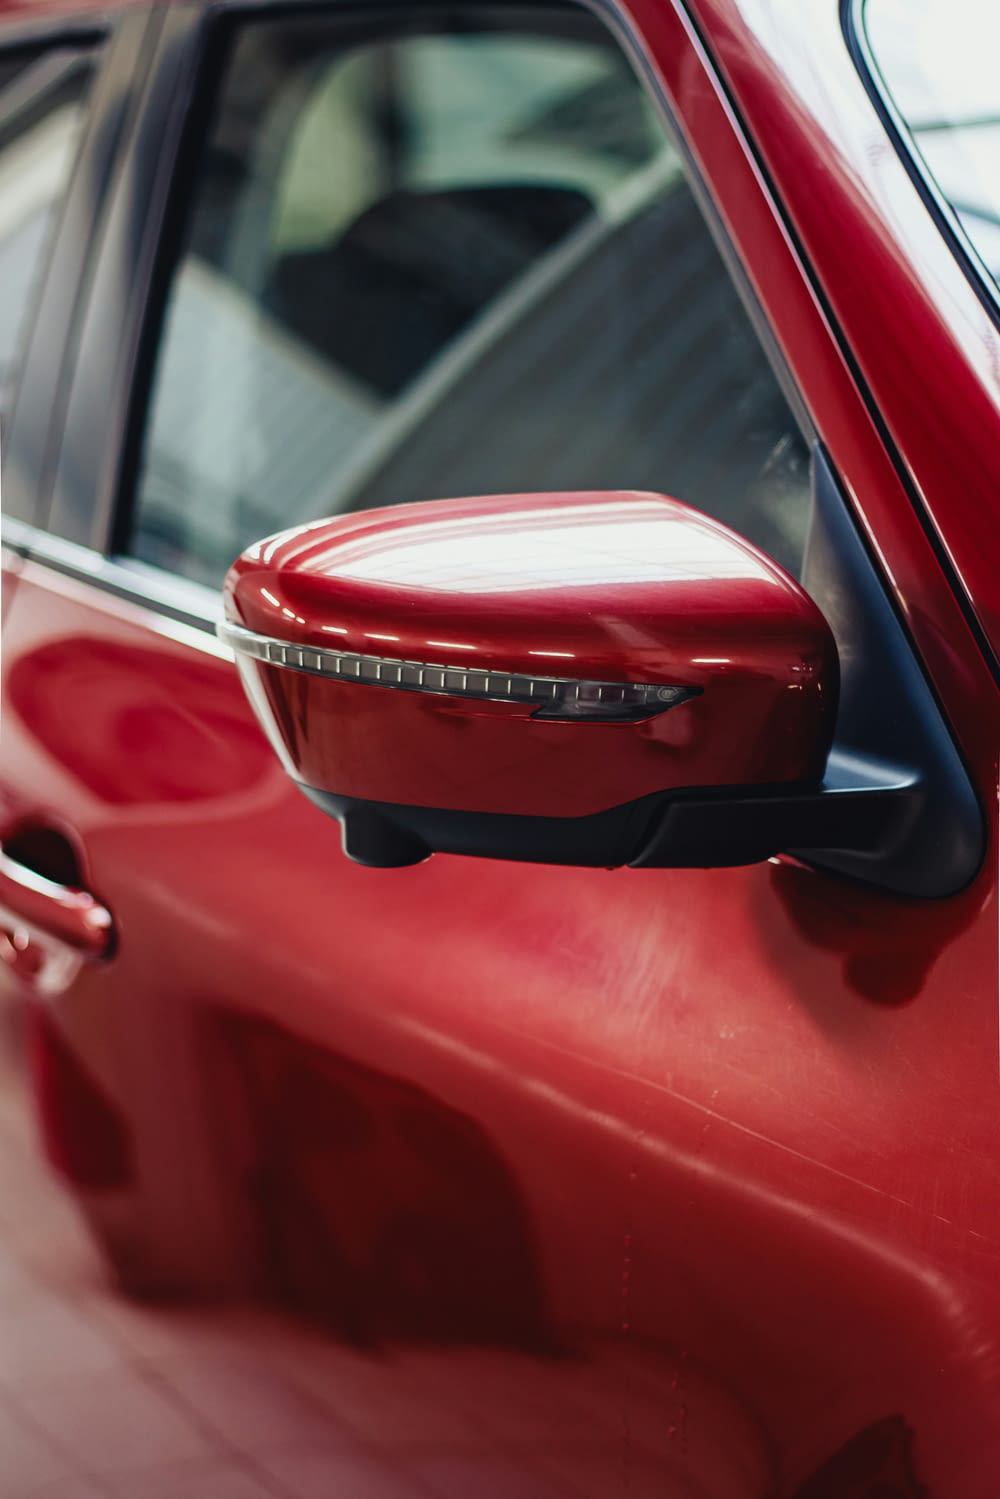 a close up of a red car door handle